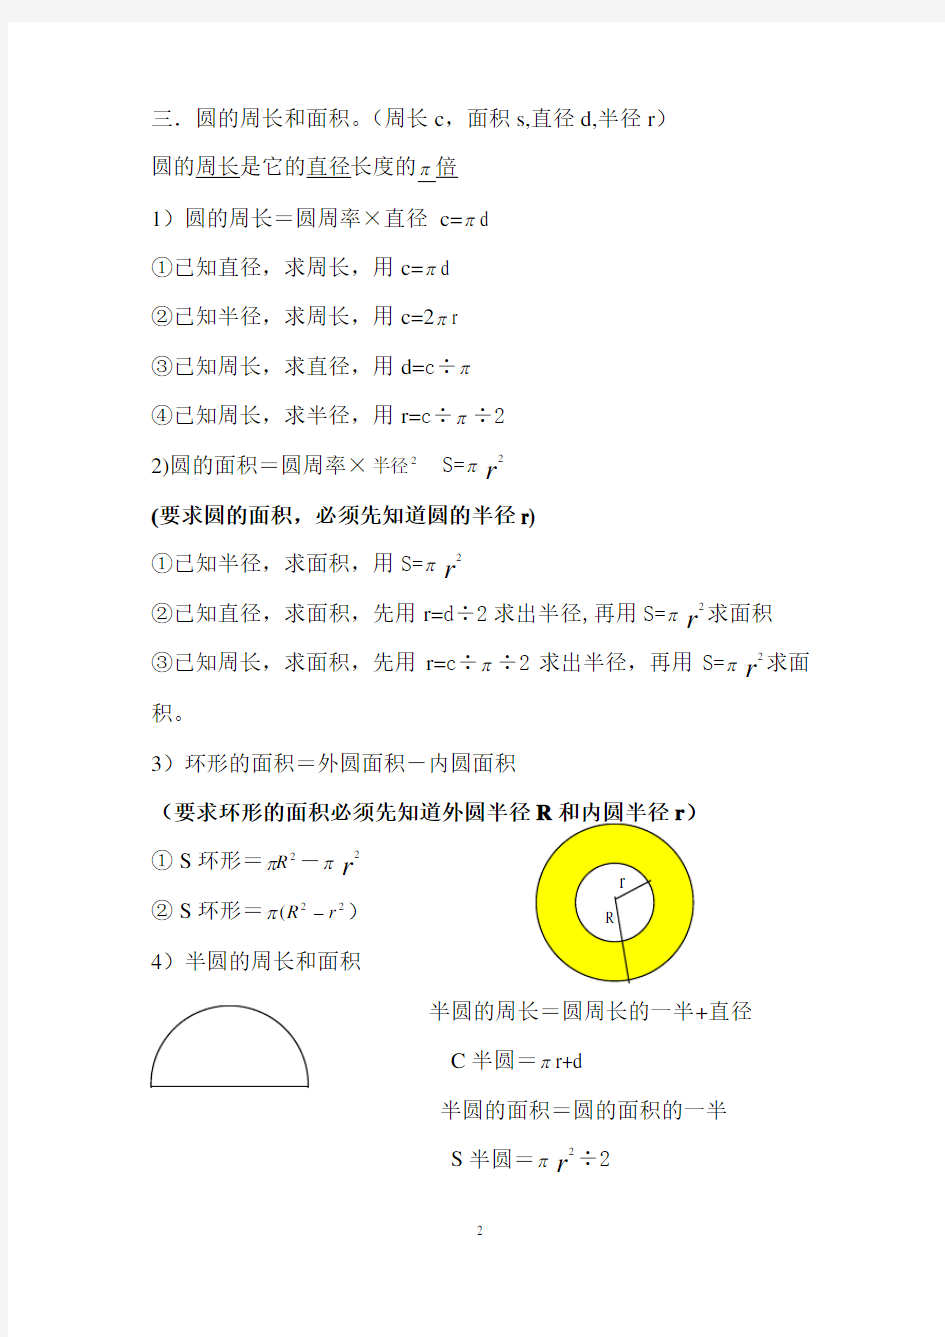 圆的周长和面积常用公式